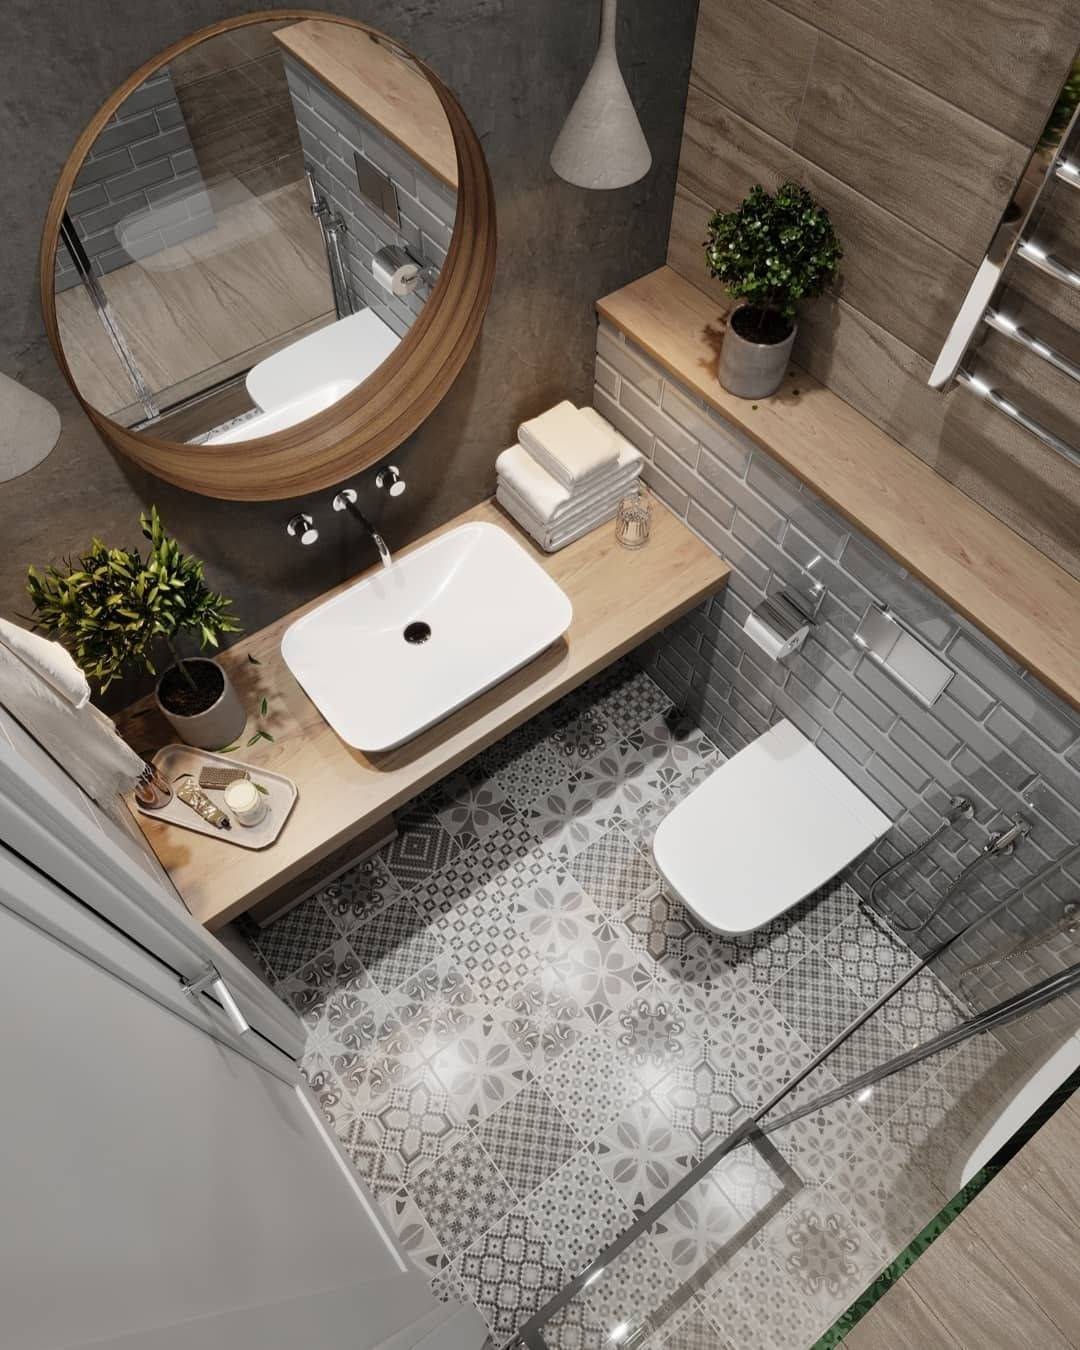 Дизайн маленькой ванной комнаты | идеи для ремонта (30+ фото)